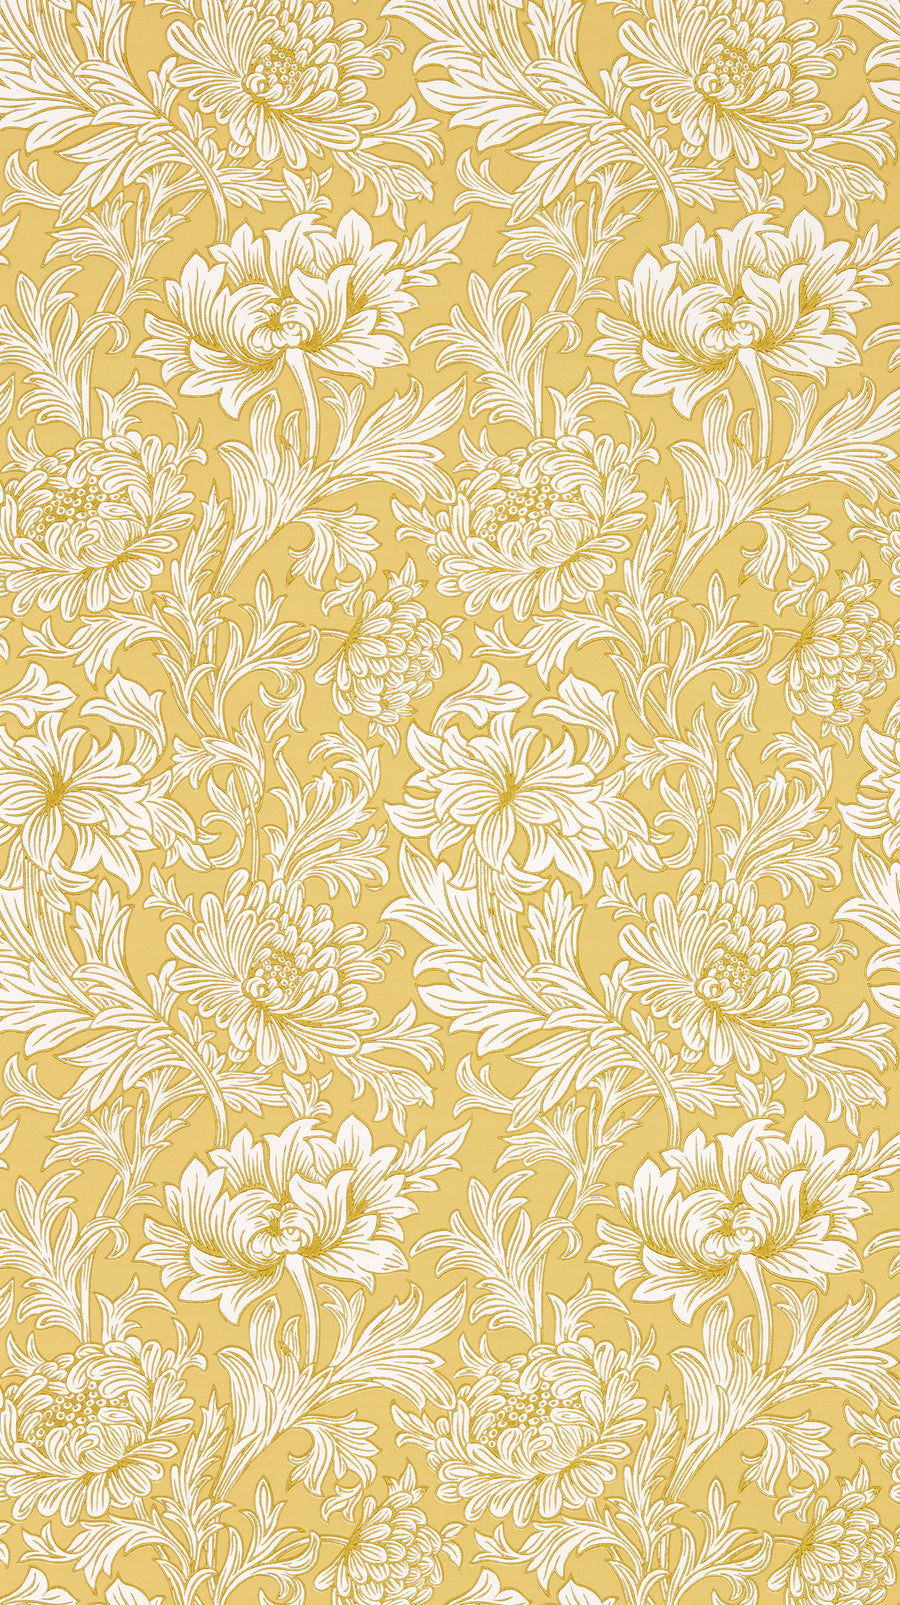 MORRIS & Co.(ウィリアム・モリス) / SIMPLY MORRIS / Chrysanthemum Toile 217068